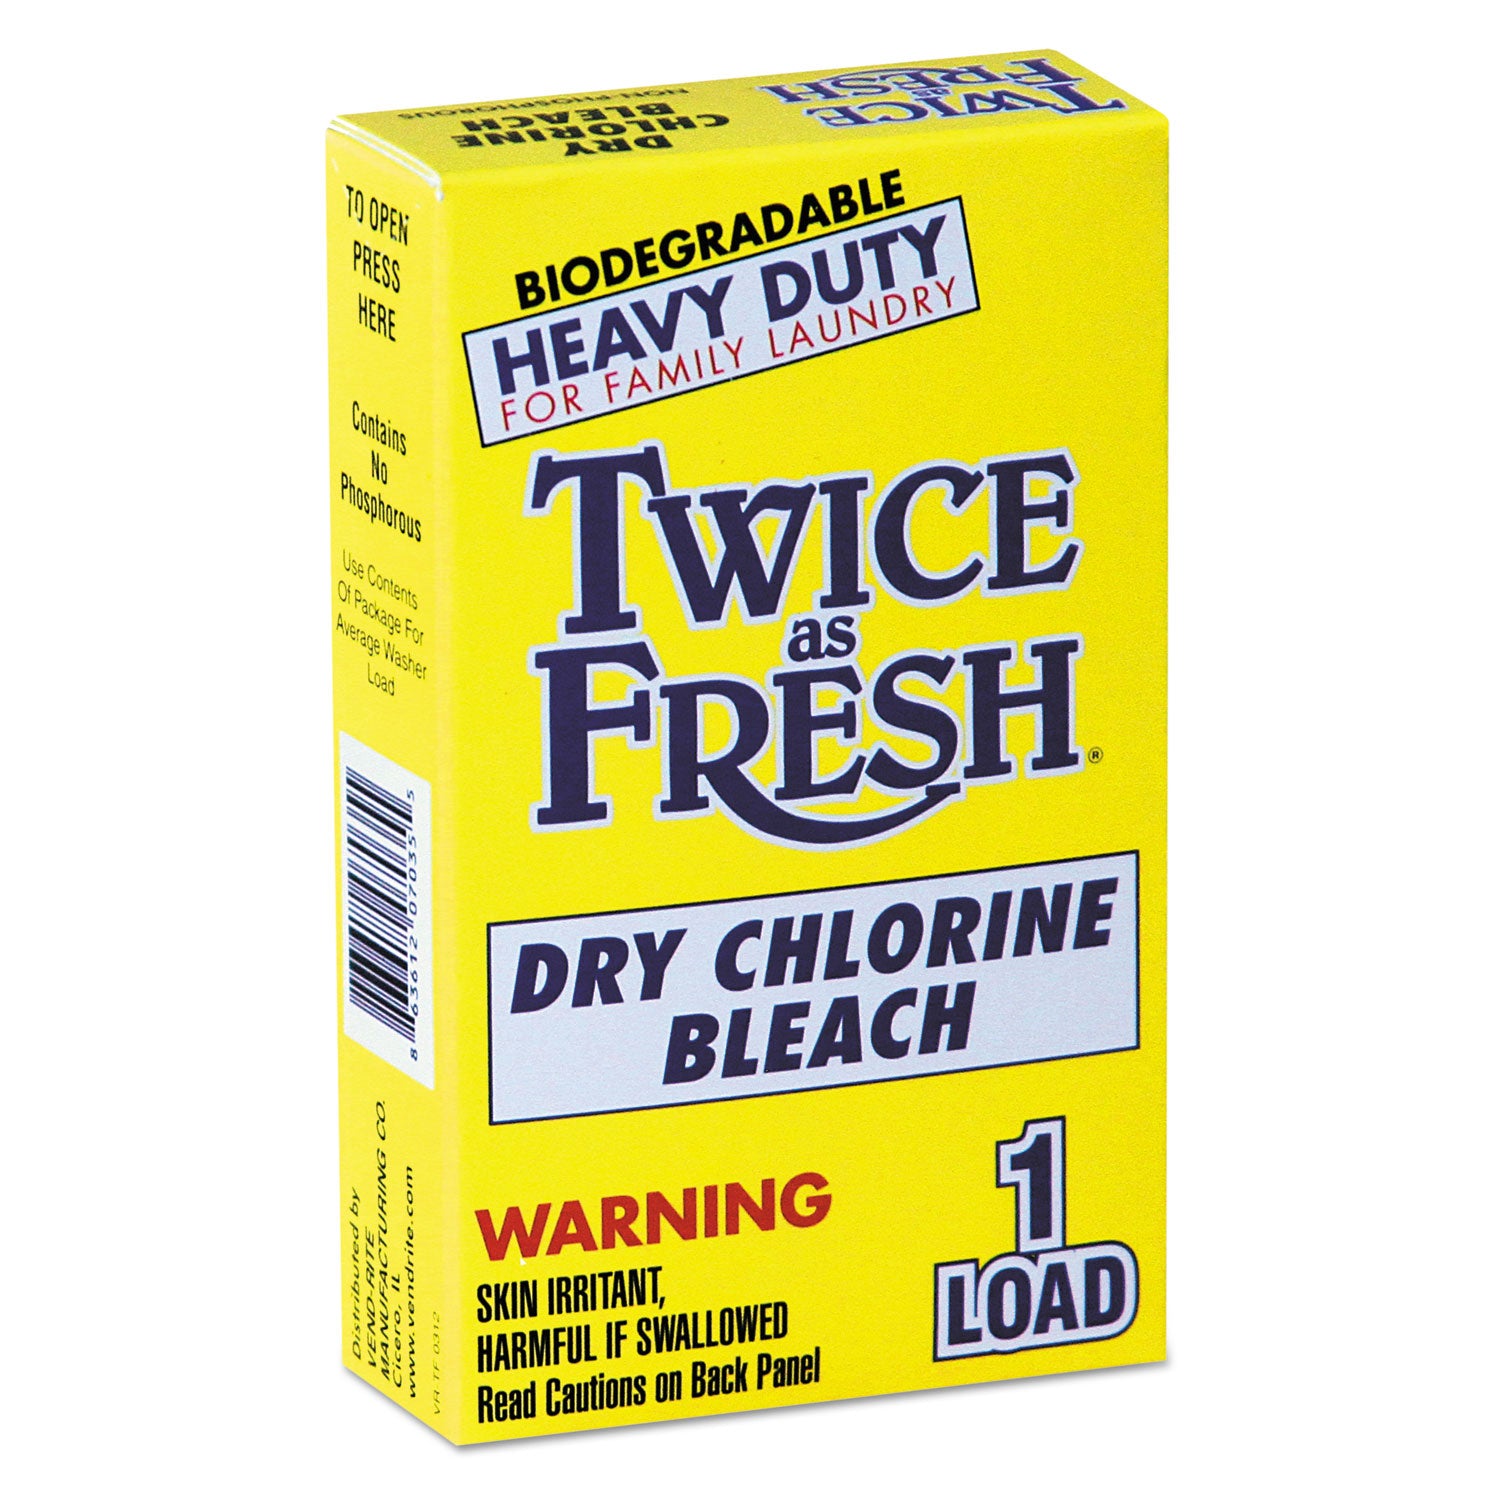 Heavy Duty Coin-Vend Powdered Chlorine Bleach, 1 load, 100/Carton - 